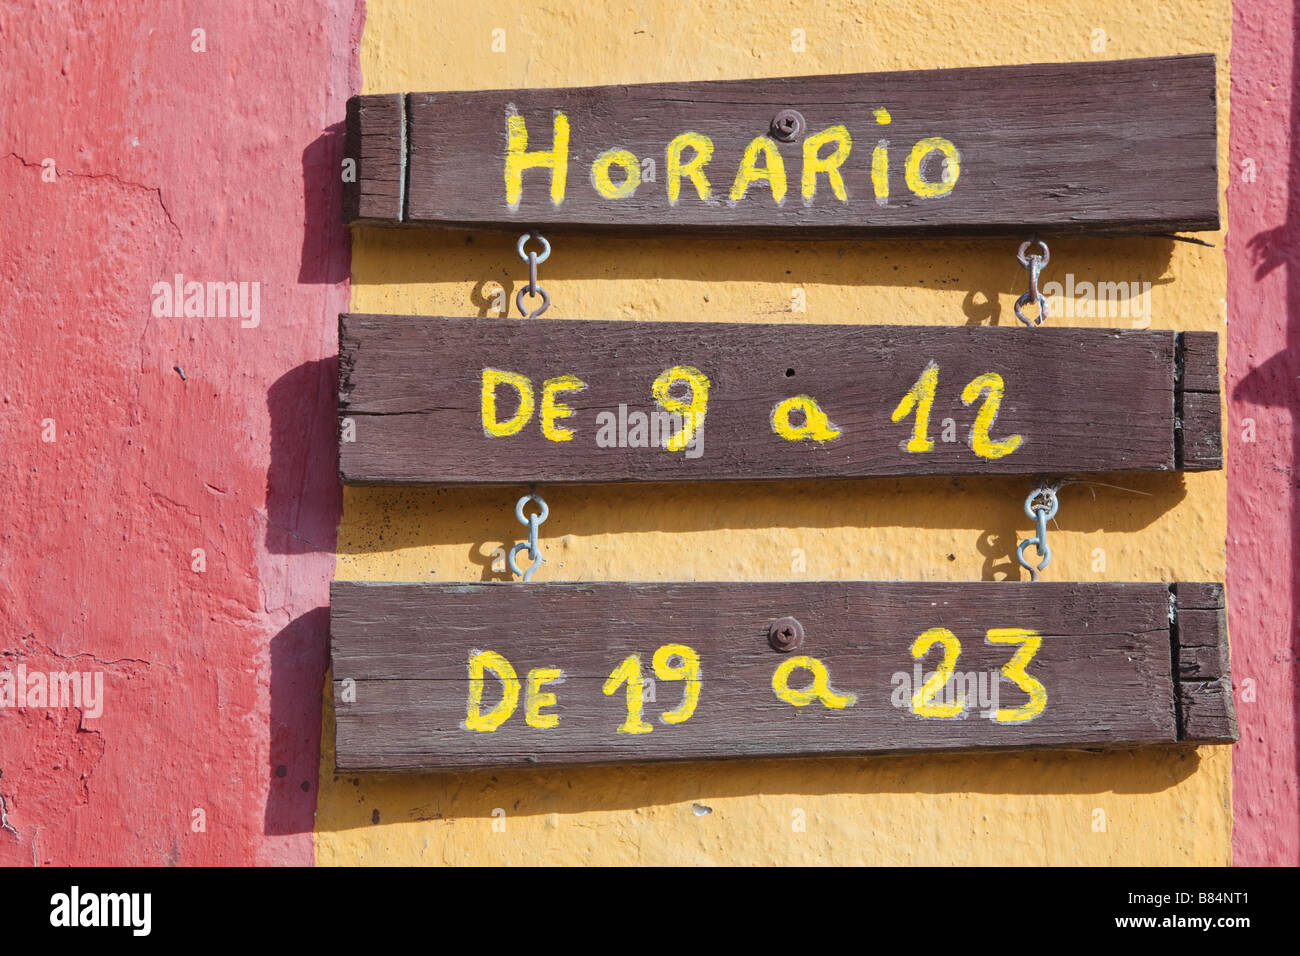 Horario oder Öffnungszeiten beachten Sie in der spanischen Sprache außerhalb des spanischen Unternehmens Stockfoto